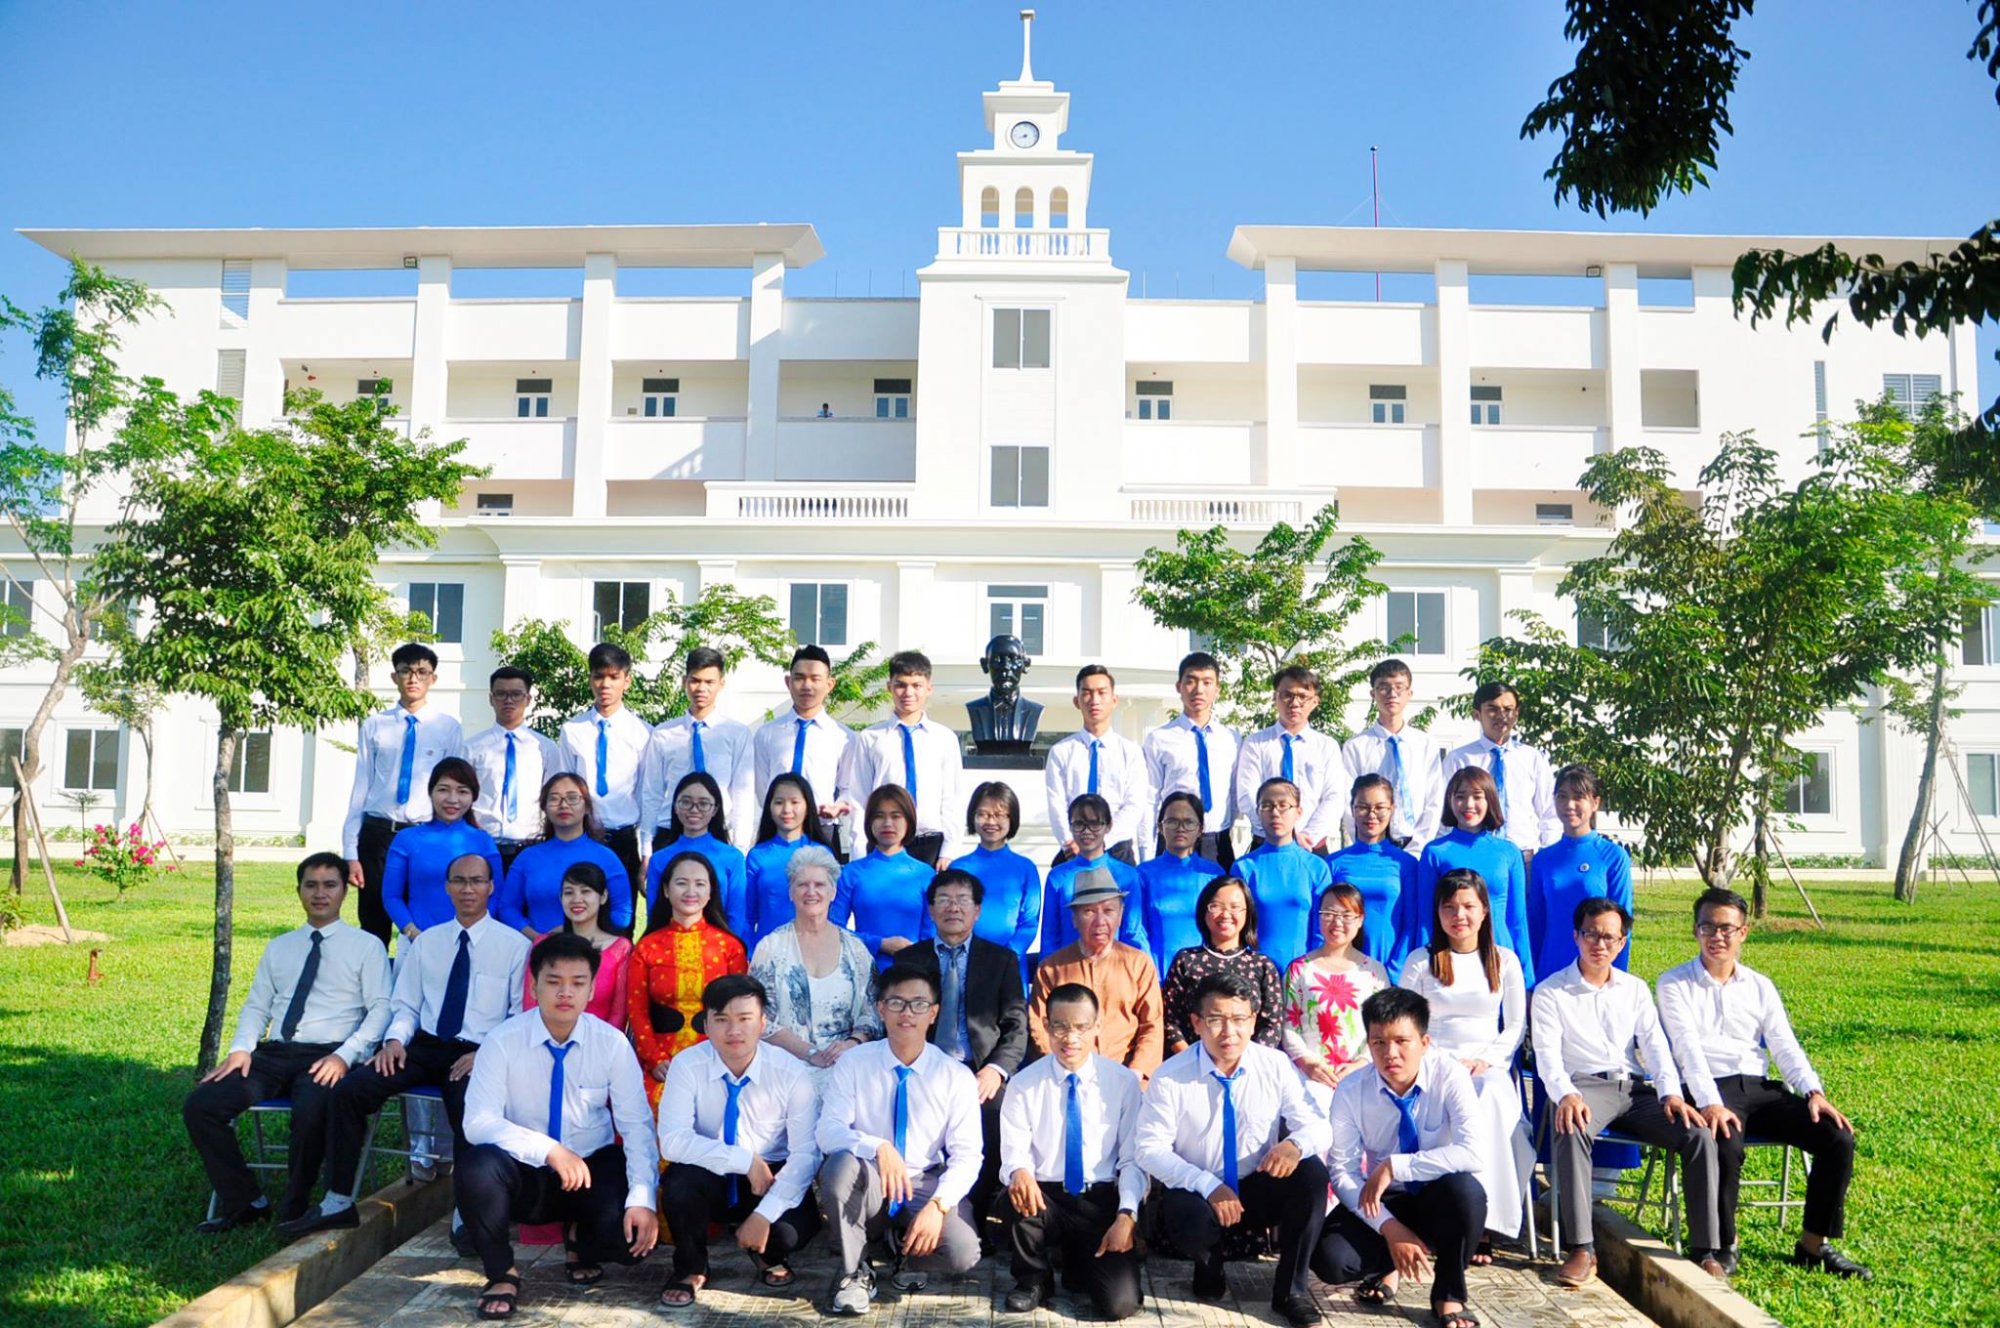 Trường Đại học Y khoa Phan Châu Trinh cam kết đầu ra: tiếp nhận 100% sinh viên điều dưỡng, xét nghiệm, QTBV